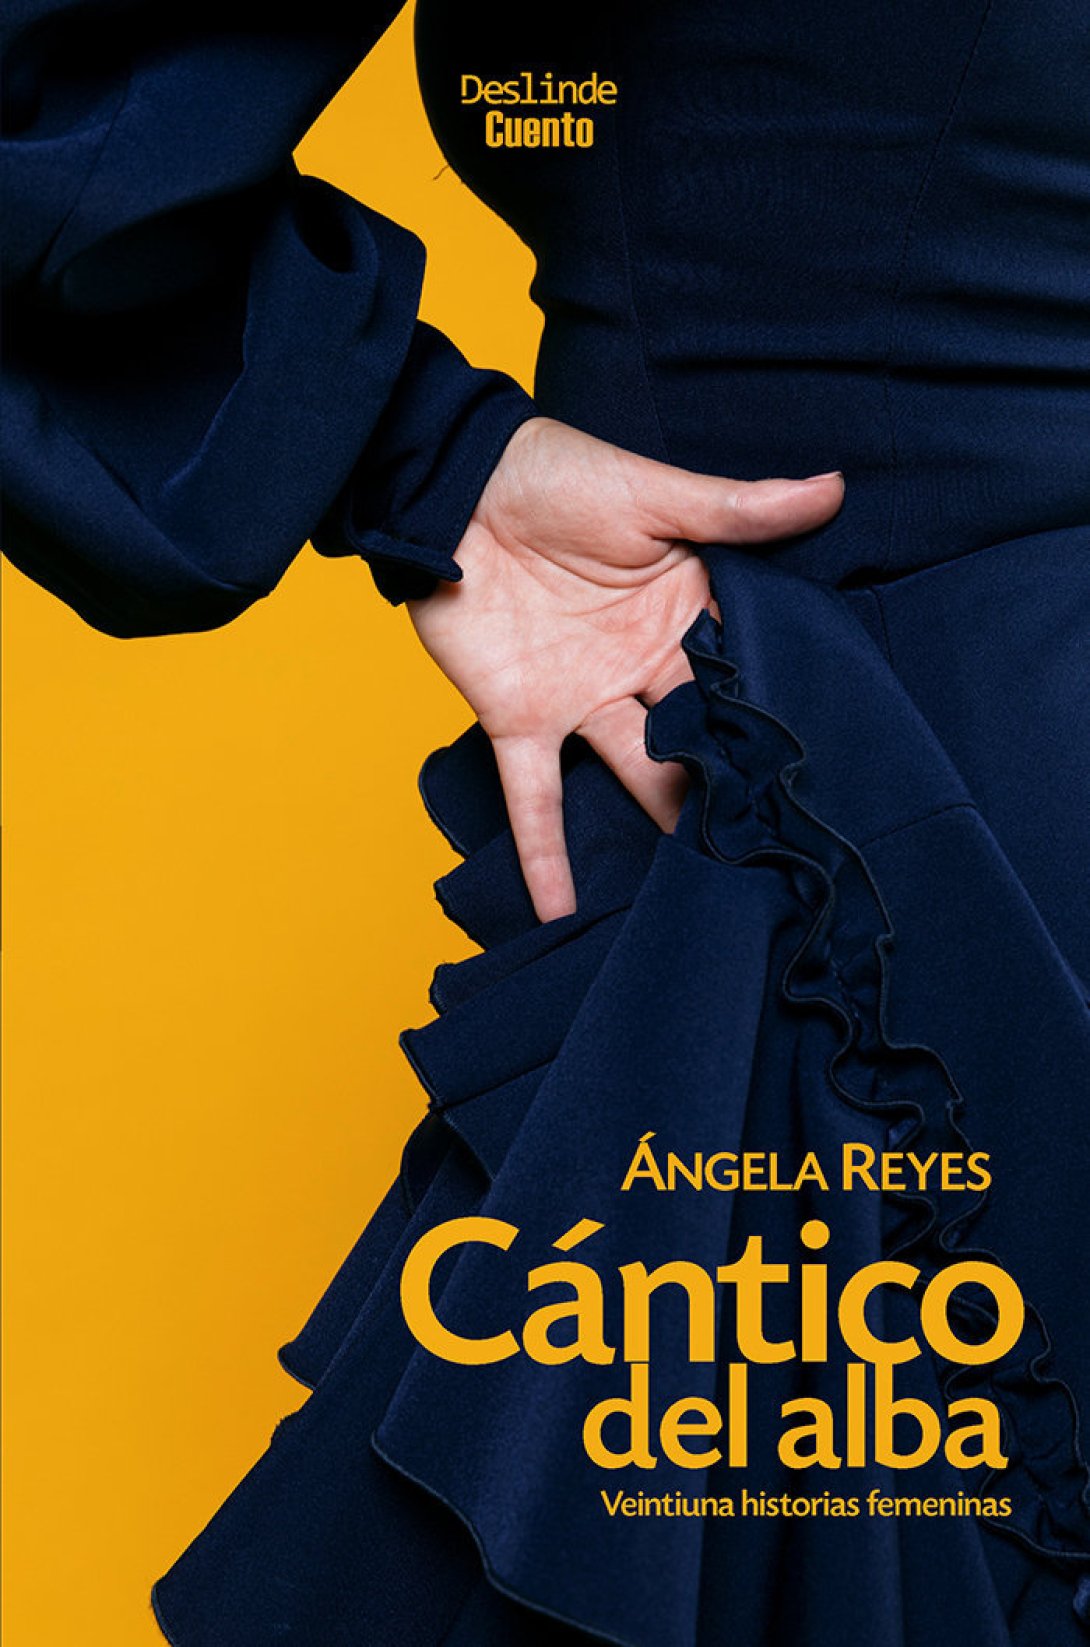 Ángela Reyes: "Cántico del alba", veintiuna historias femeninas (Ediciones Deslinde, Col. Cuento, Madrid, 2019)